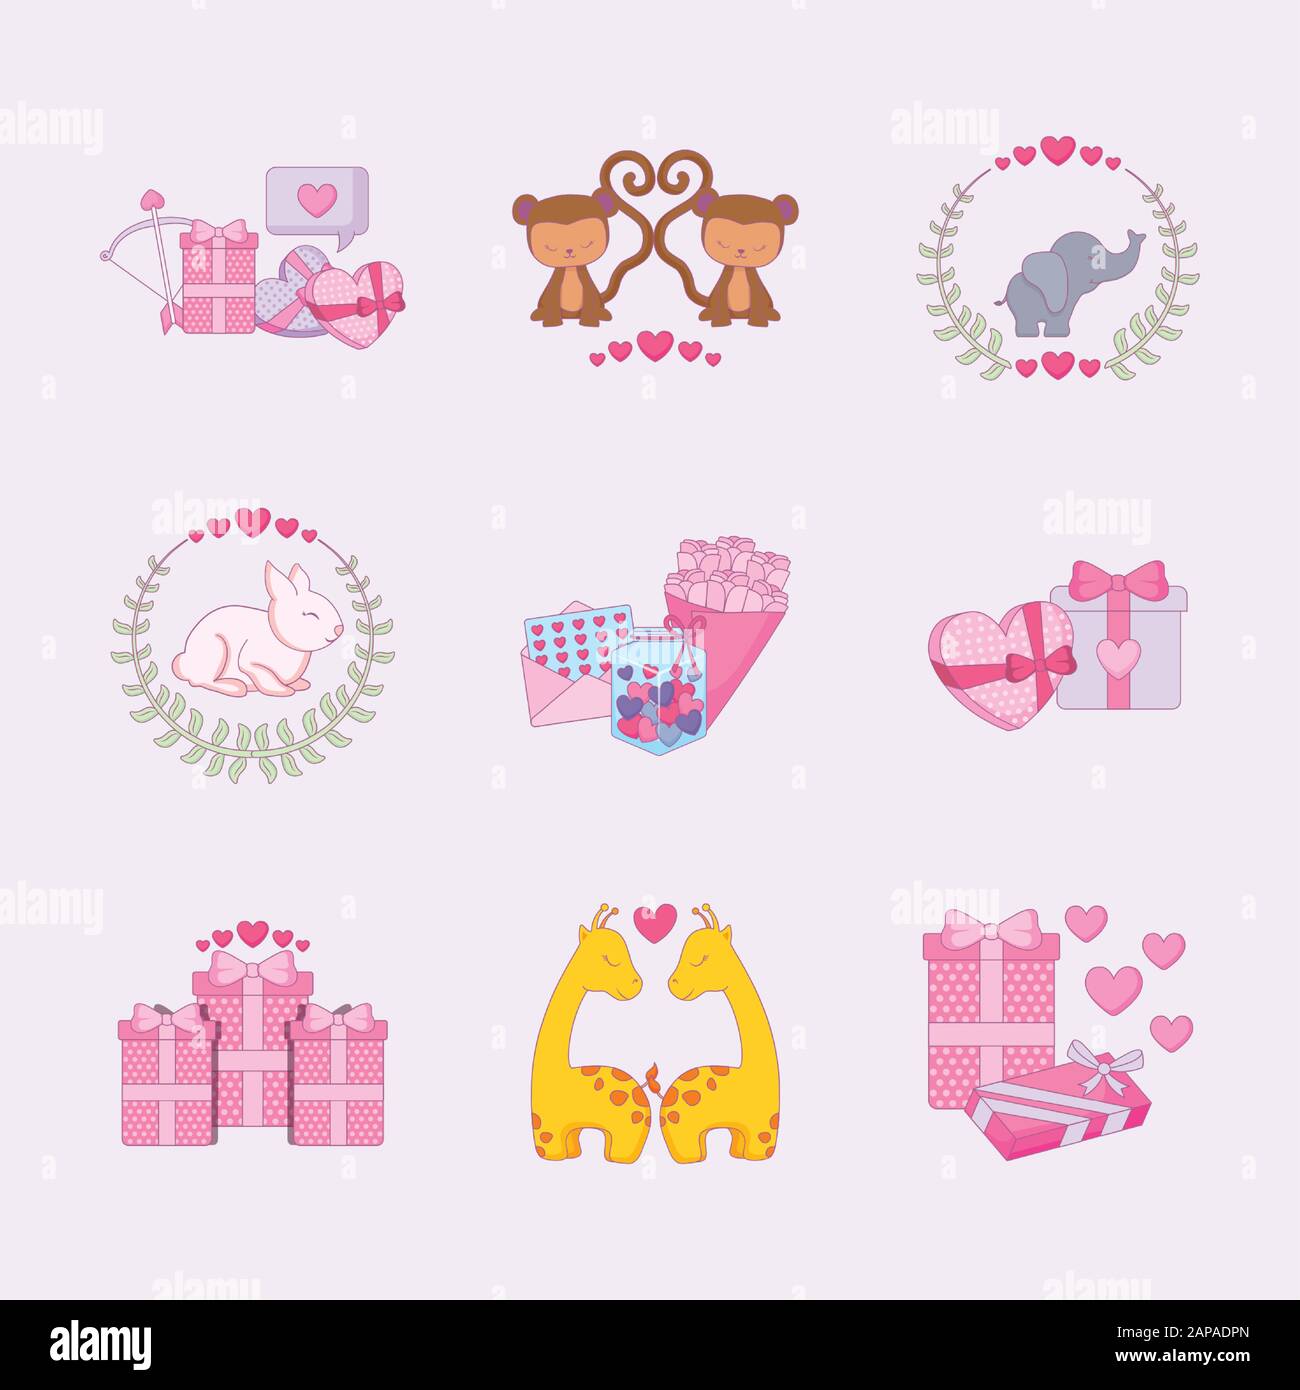 Icon-Set-Design von Love Happy Valentines Tag Hochzeit Leidenschaft romantische Dekoration und Hochzeit Thema Vektor-Illustration Stock Vektor